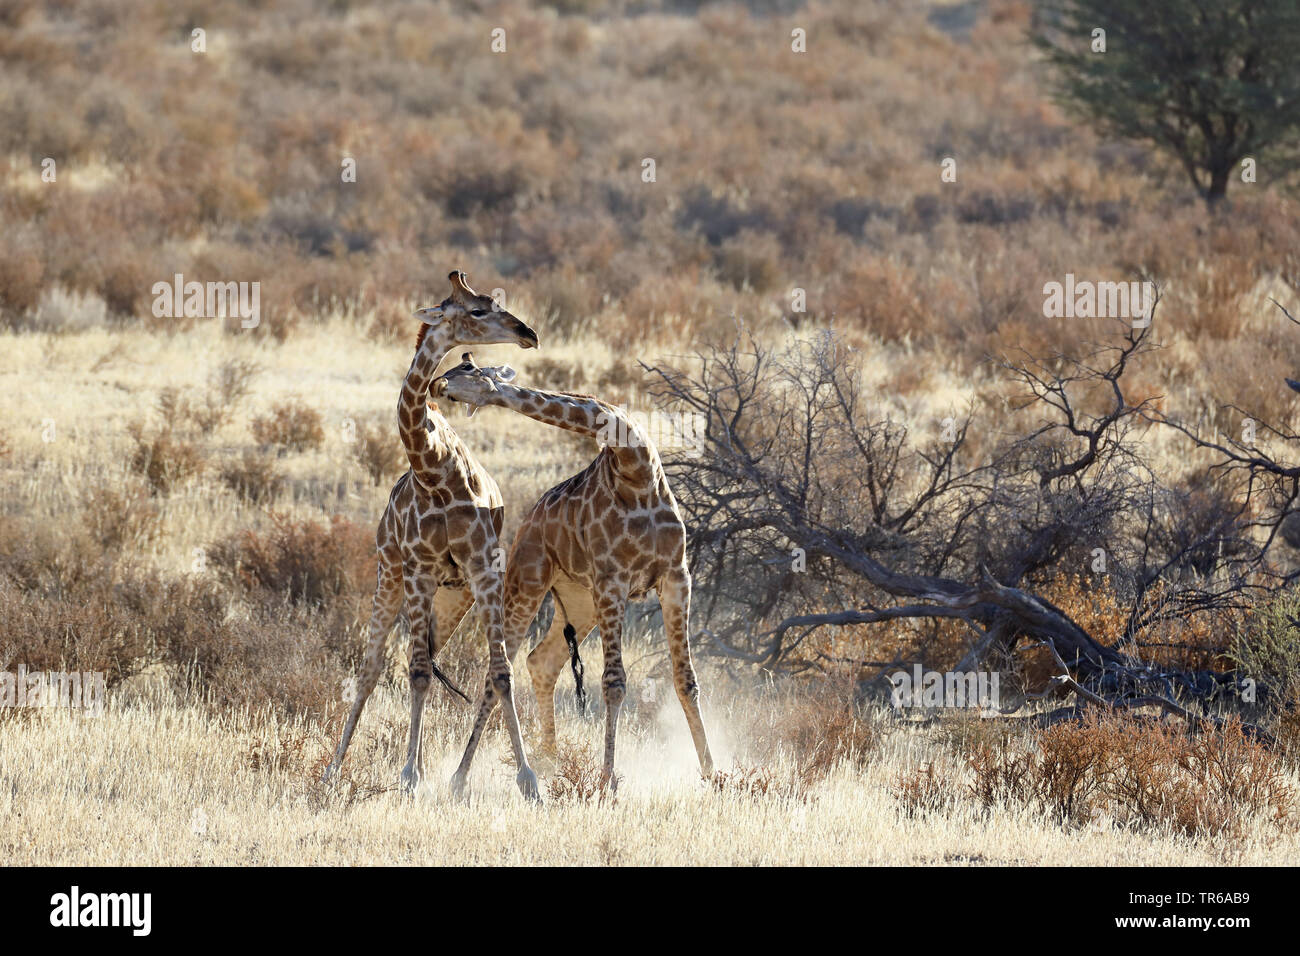 Jirafa (Giraffa camelopardalis), lucha territorial entre dos varones de jirafas en la sabana, África del Sur, el Parque Transfronterizo Kgalagadi Foto de stock